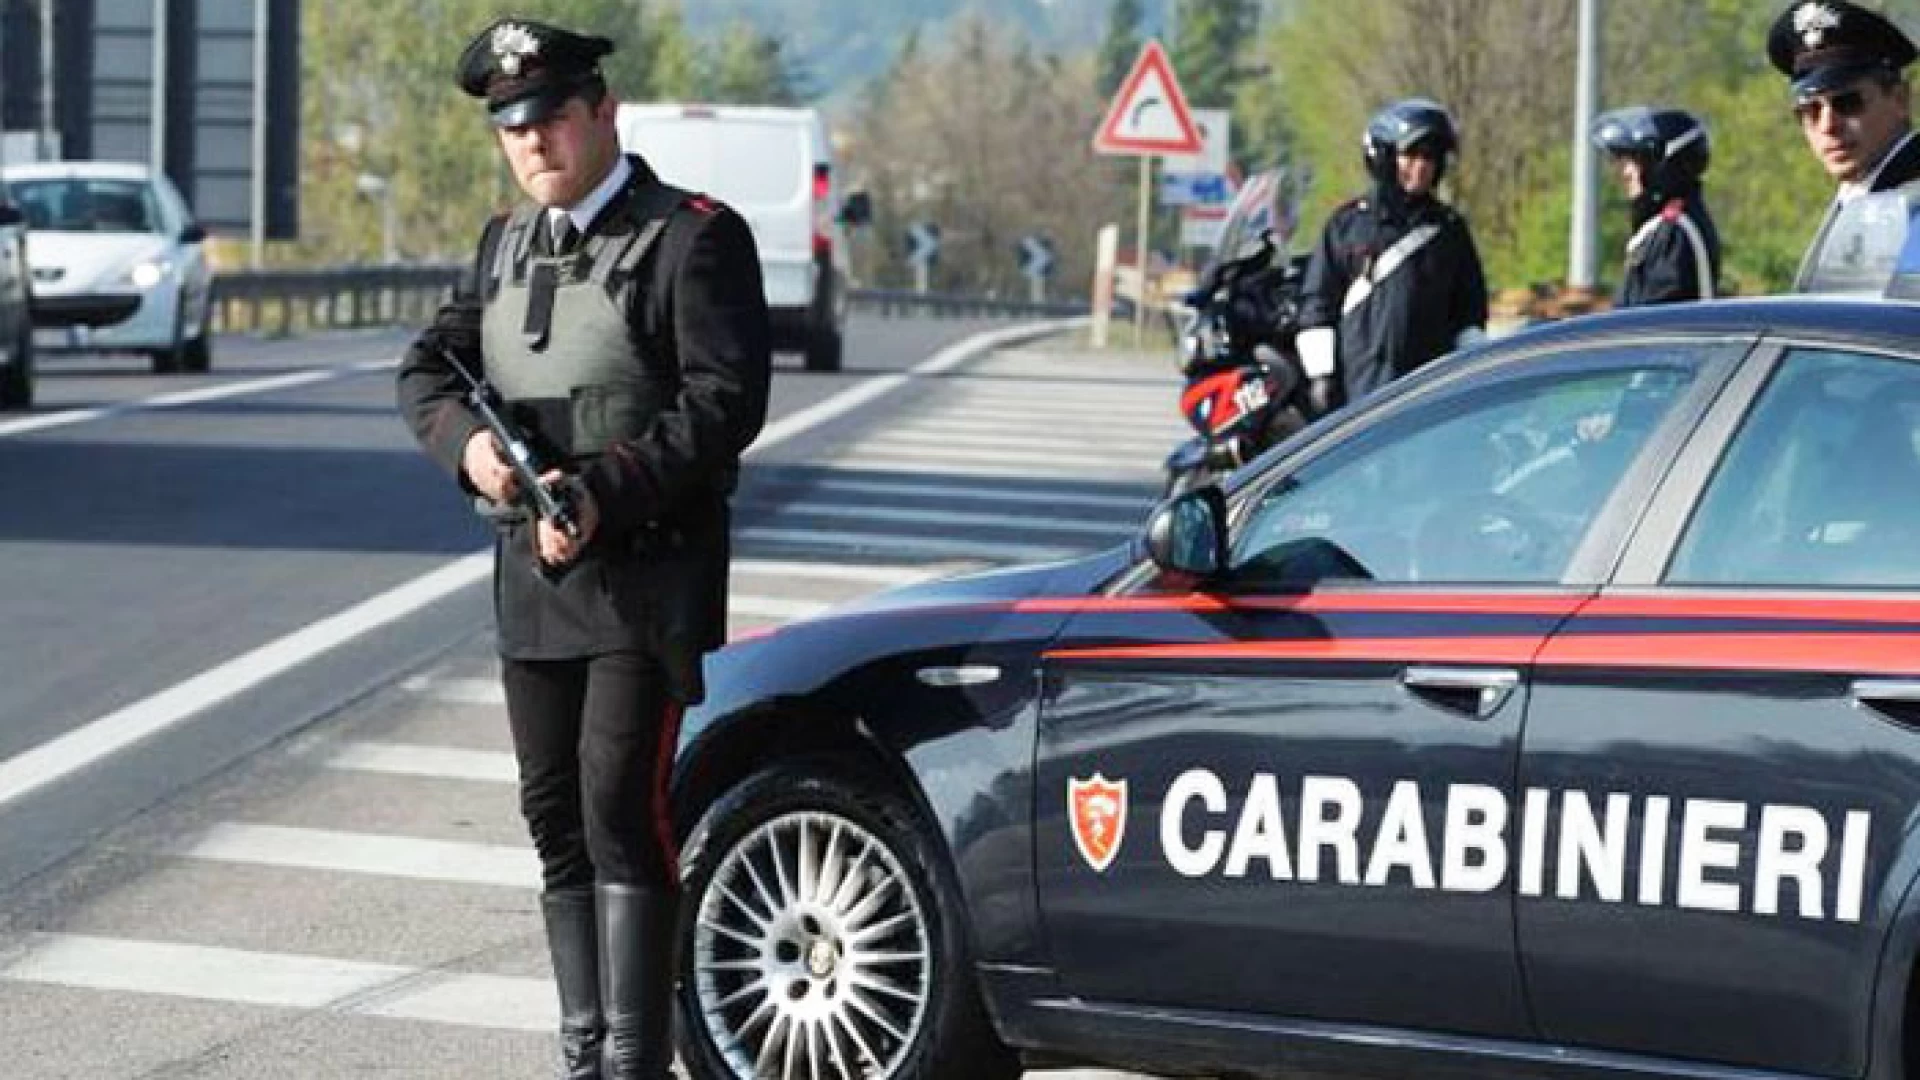 Isernia: Controlli straordinari dei Carabinieri per prevenire furti, truffe ed altri reati predatori. Scattano misure di prevenzione nei confronti di sette pregiudicati.